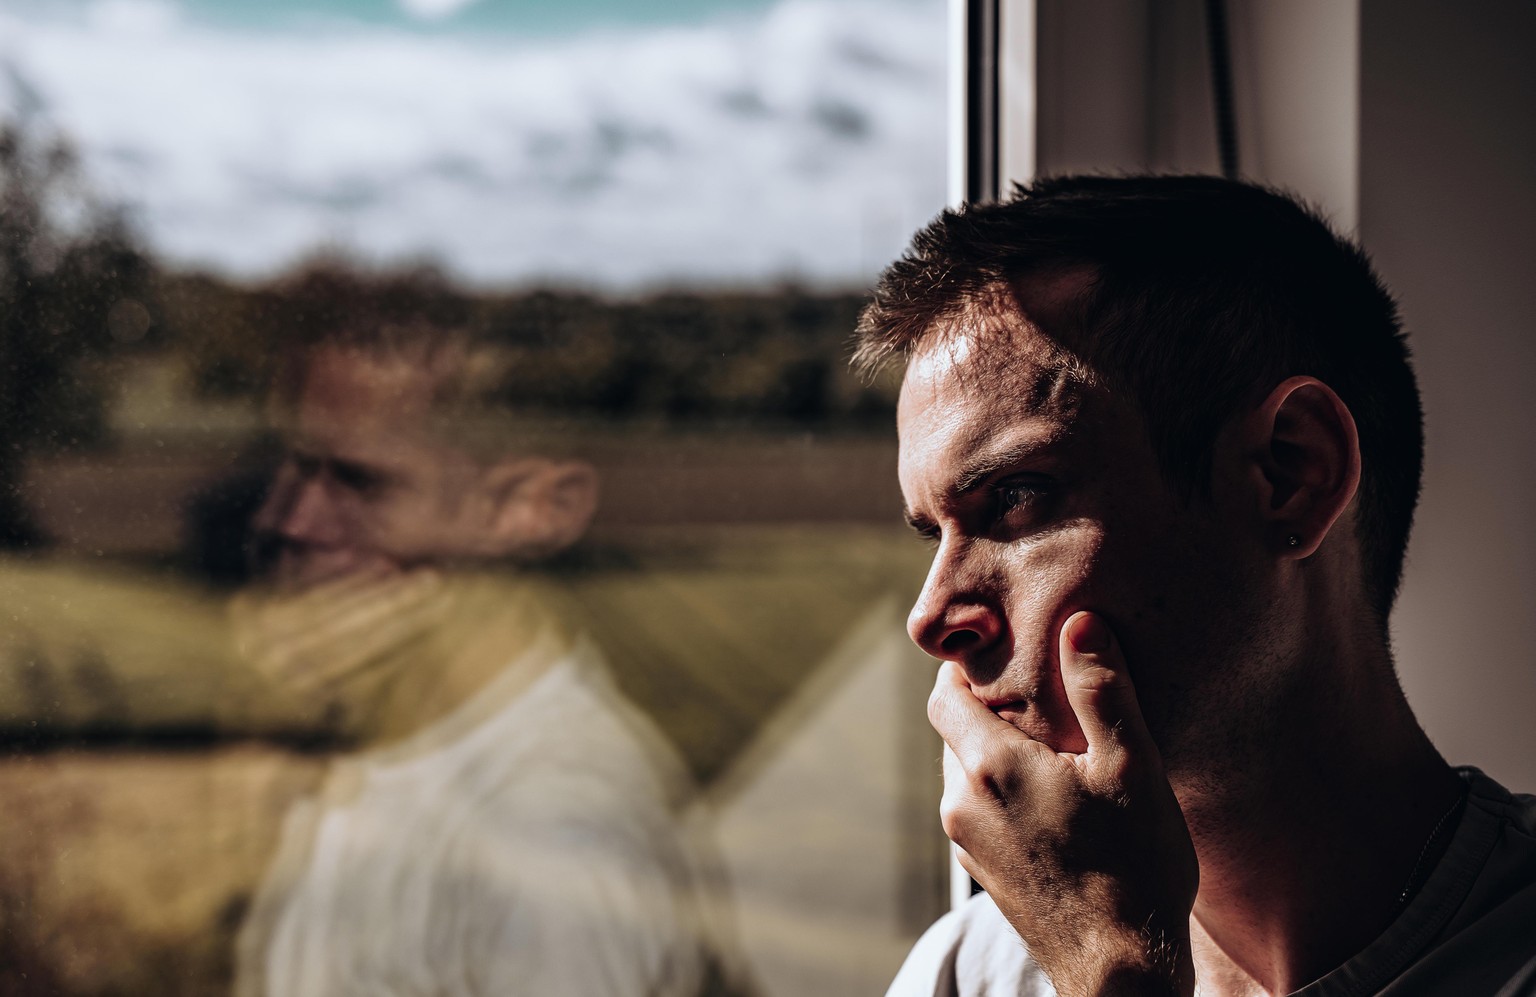 Nachdenklicher trauriger Mann schaut alleine durch das Fenster || Modellfreigabe vorhanden